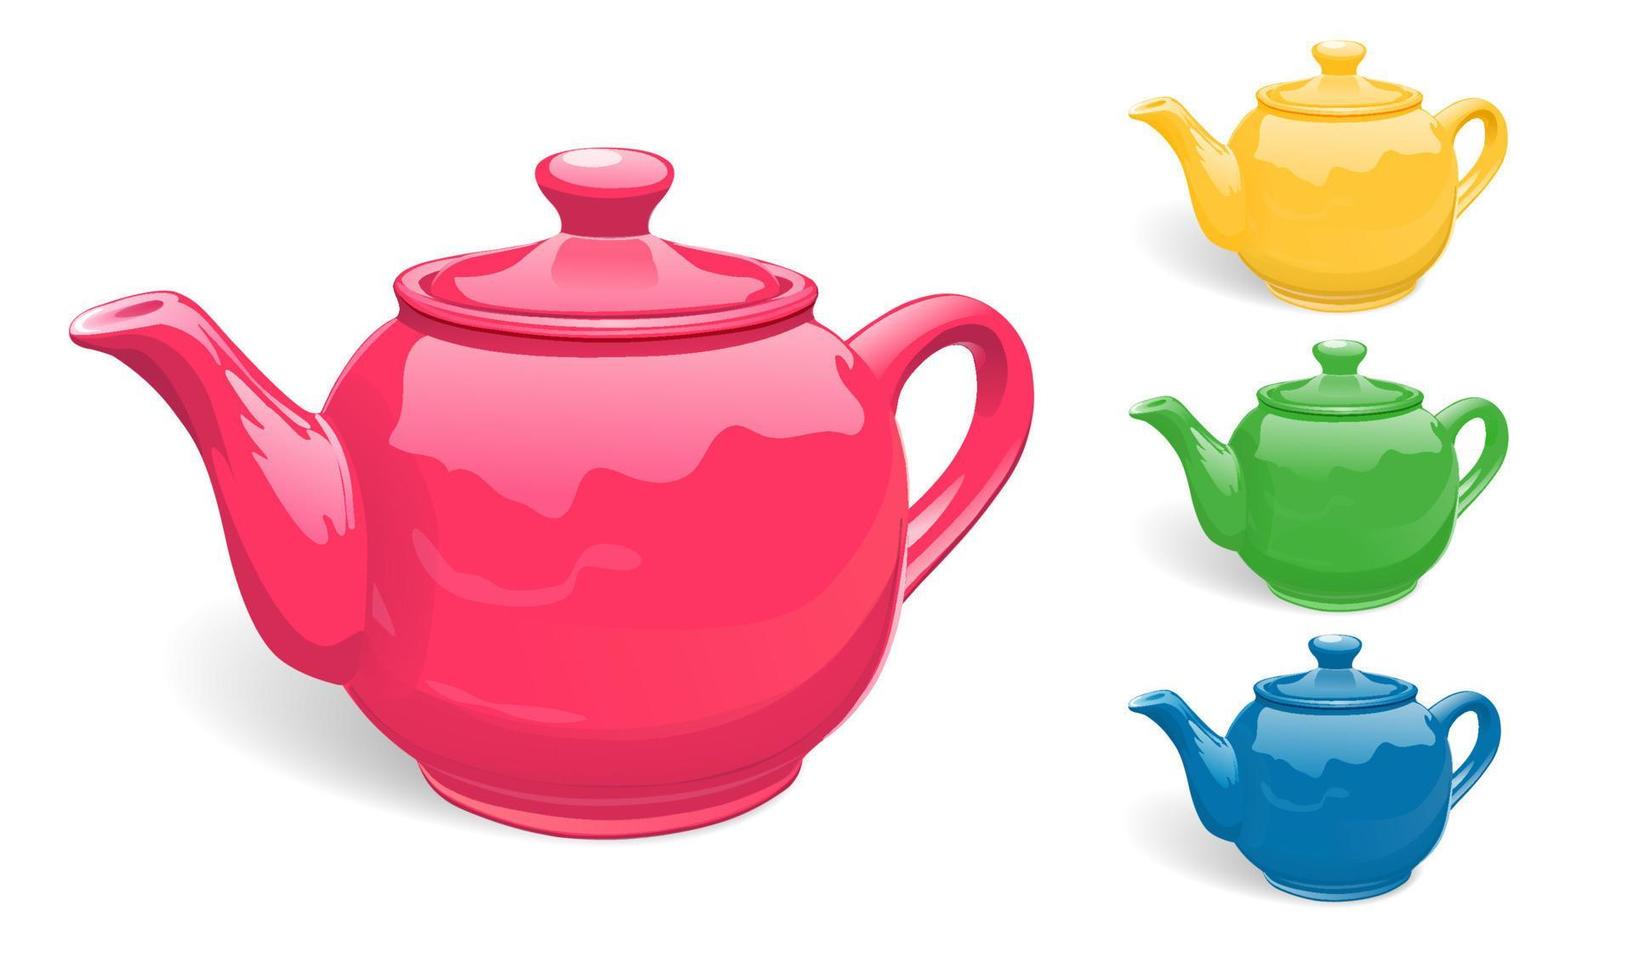 teteras para té, de cerámica, en diferentes colores. un juego de